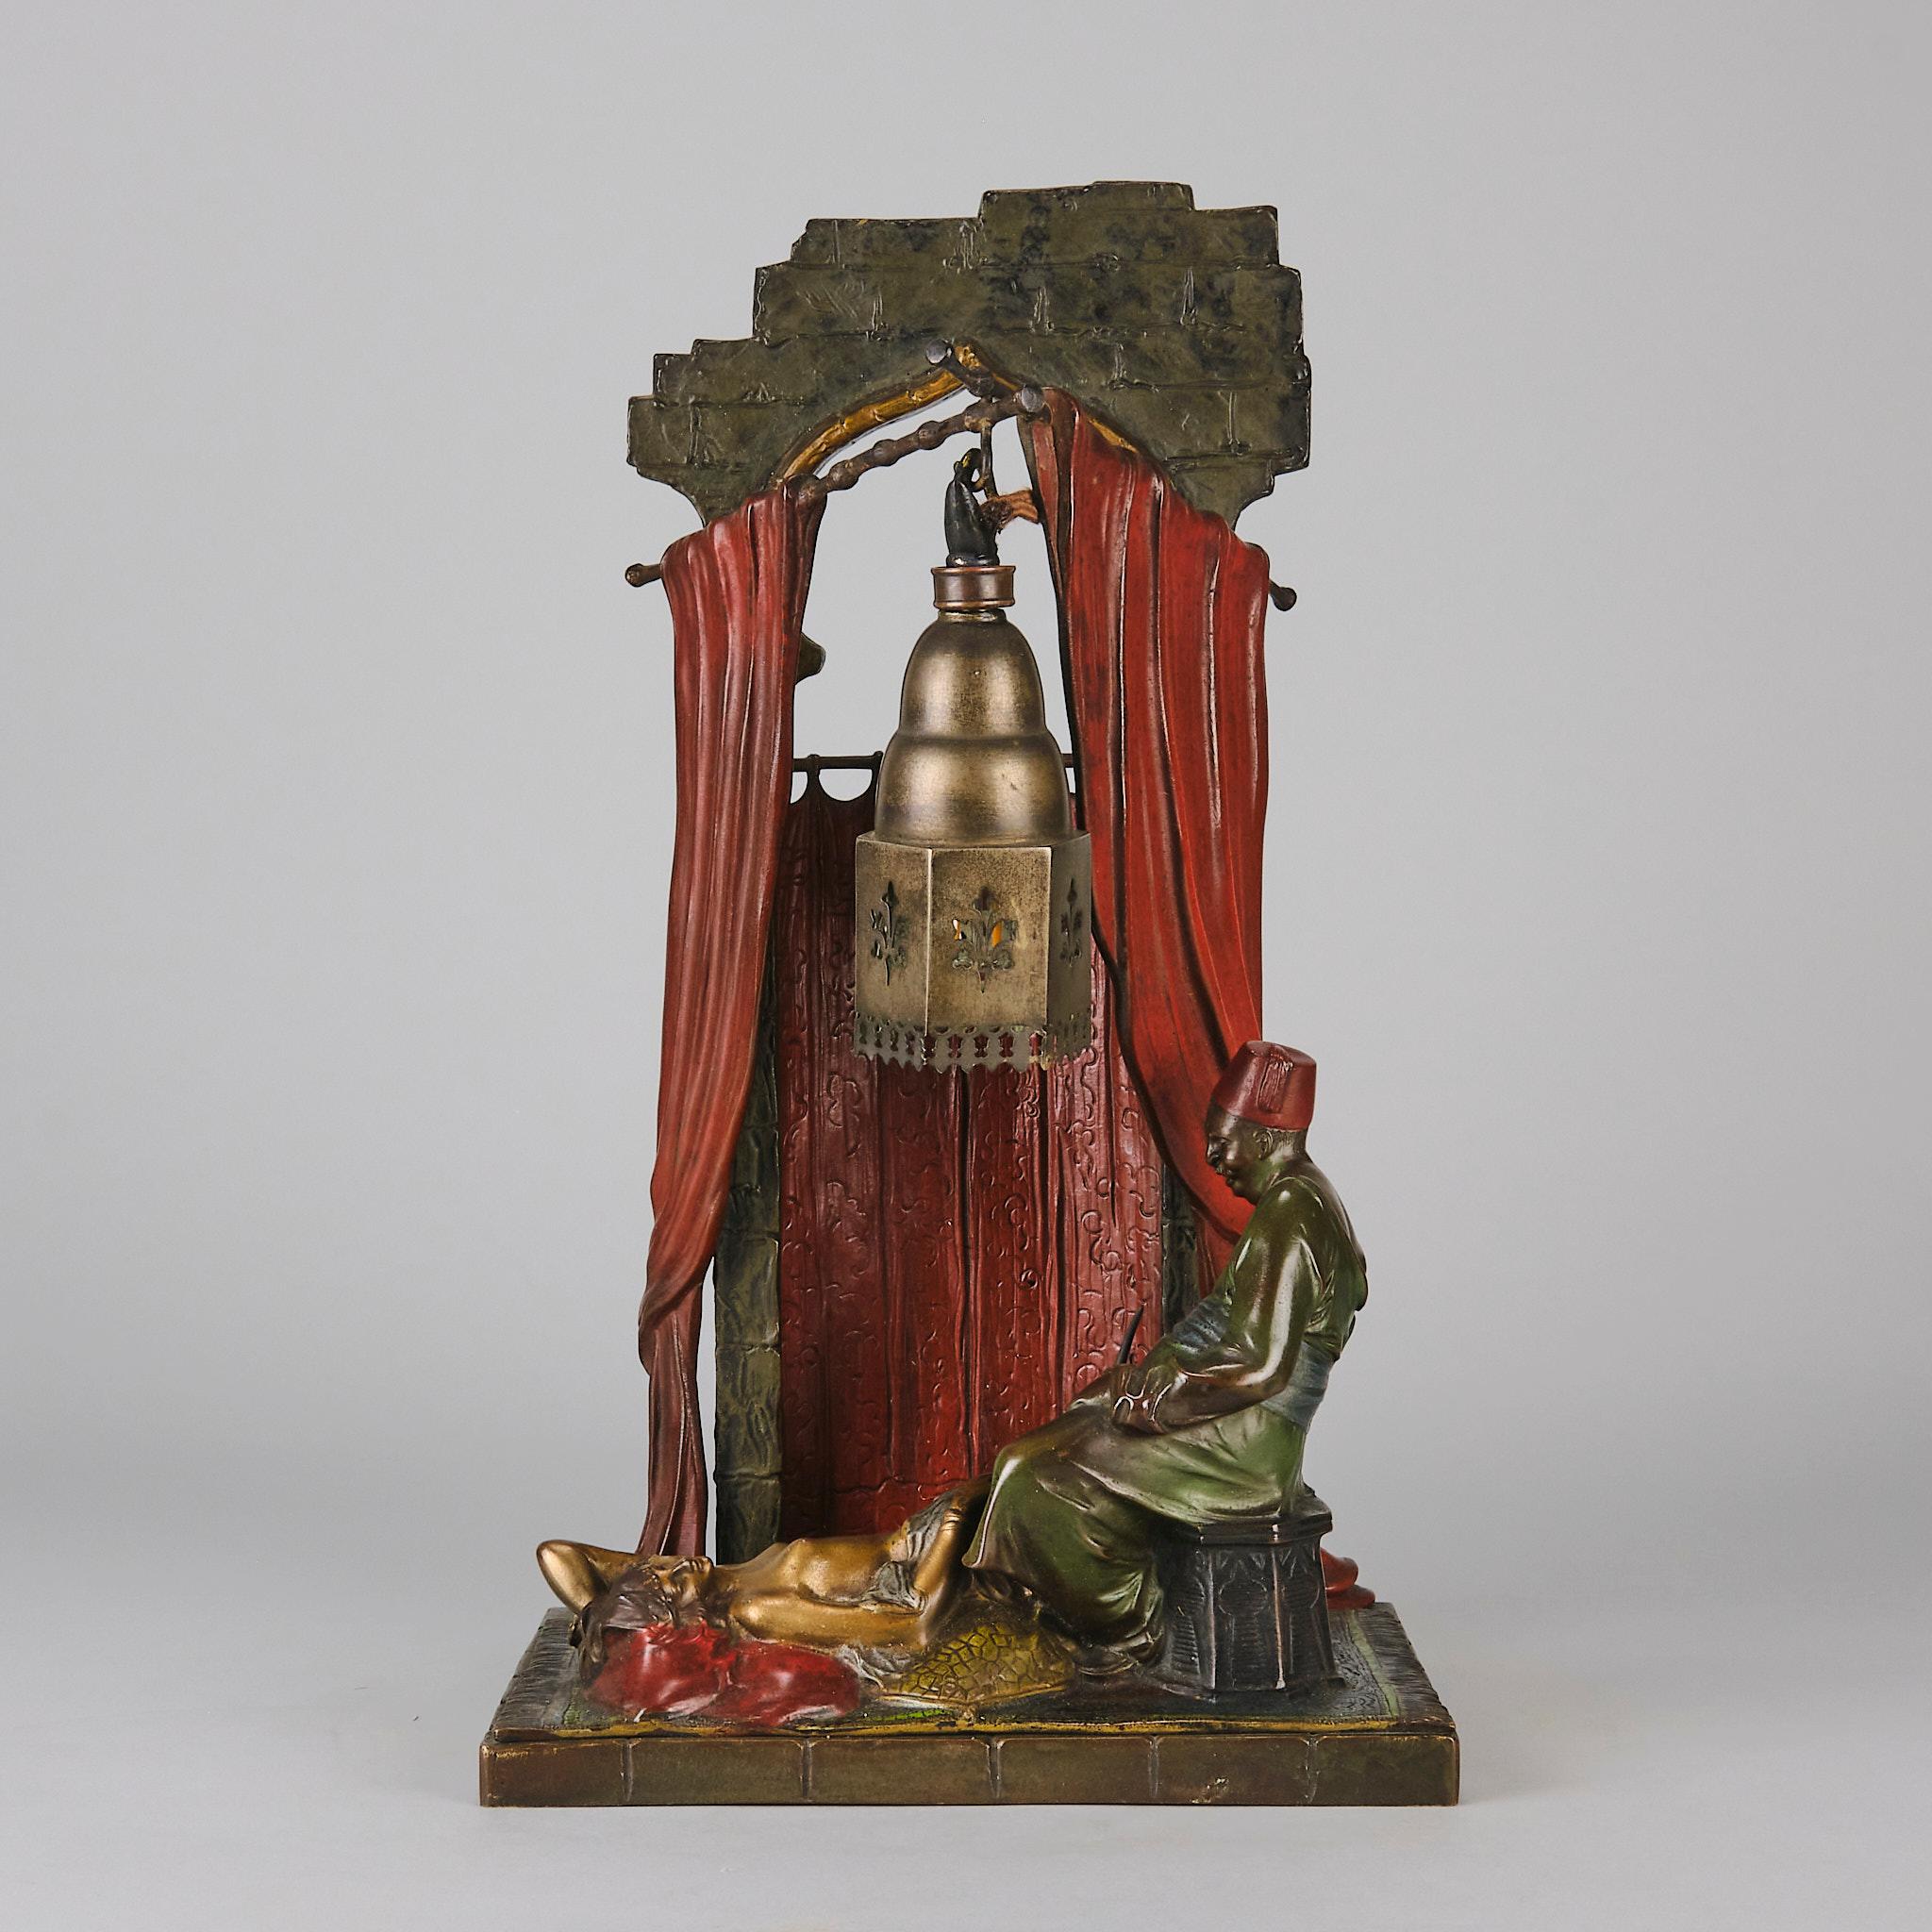 Lampe en bronze peint à froid Art Déco du début du 20e siècle, représentant une beauté de harem se relaxant sur un tapis devant un homme arabe, sur un fond architectural avec une lanterne suspendue contenant une lumière. L'ensemble repose sur une